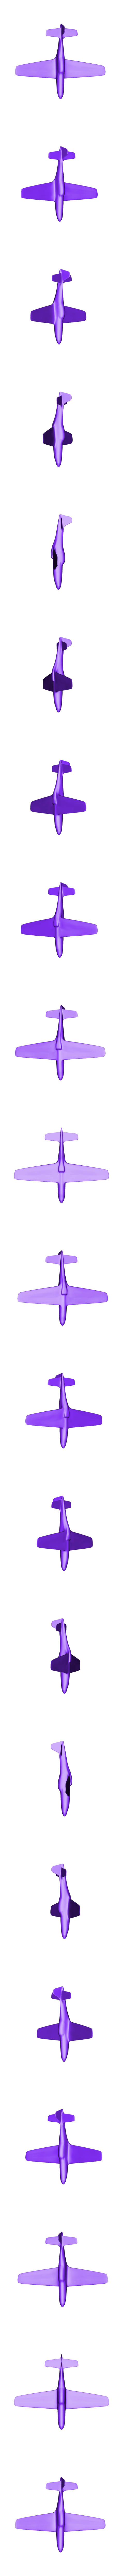 P-51.STL Télécharger fichier STL gratuit Mustang P-51 • Modèle à imprimer en 3D, Benjamin_P